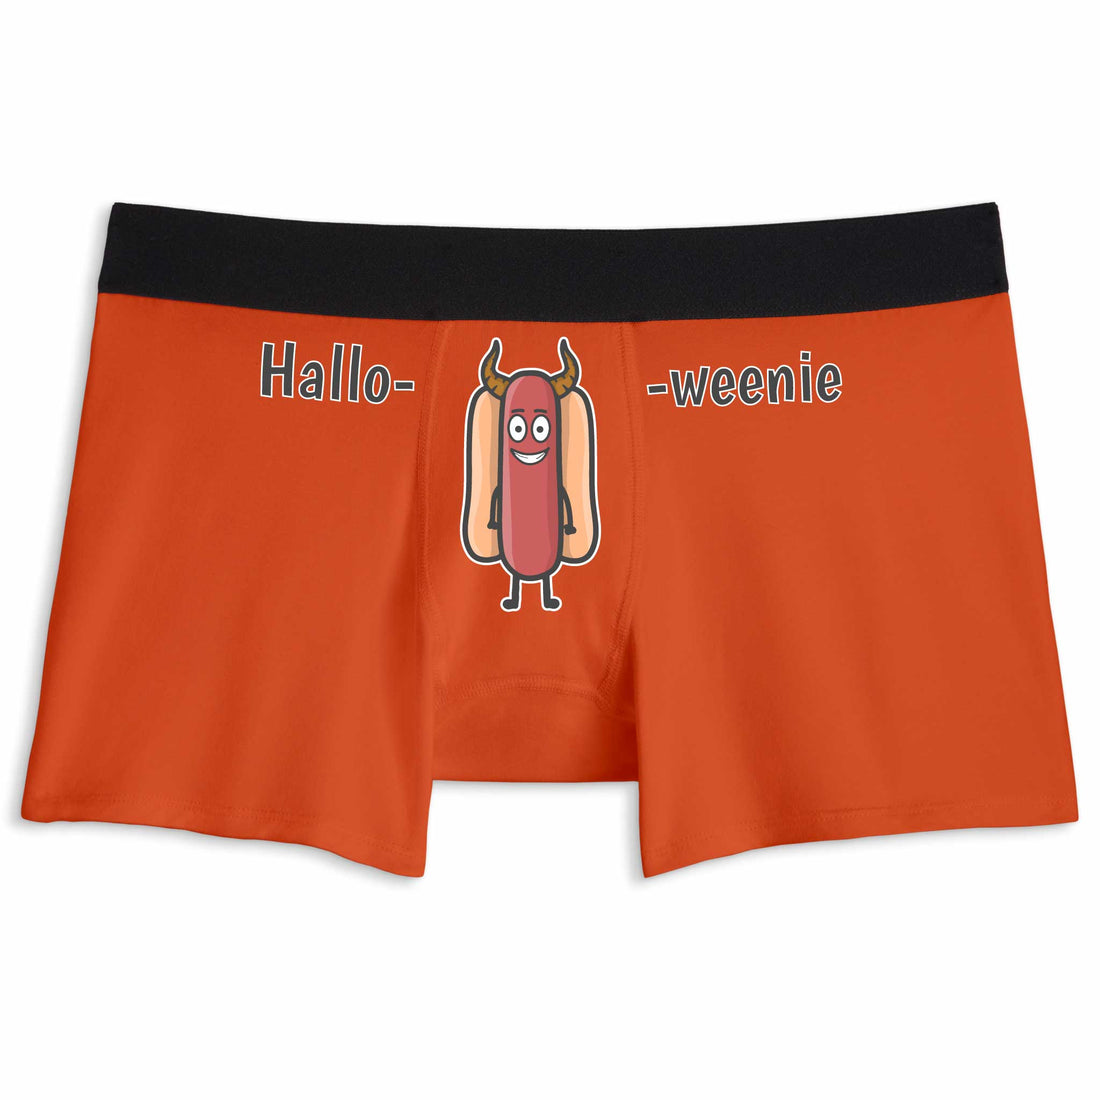 Halloweenie | Boxer Briefs Underwear